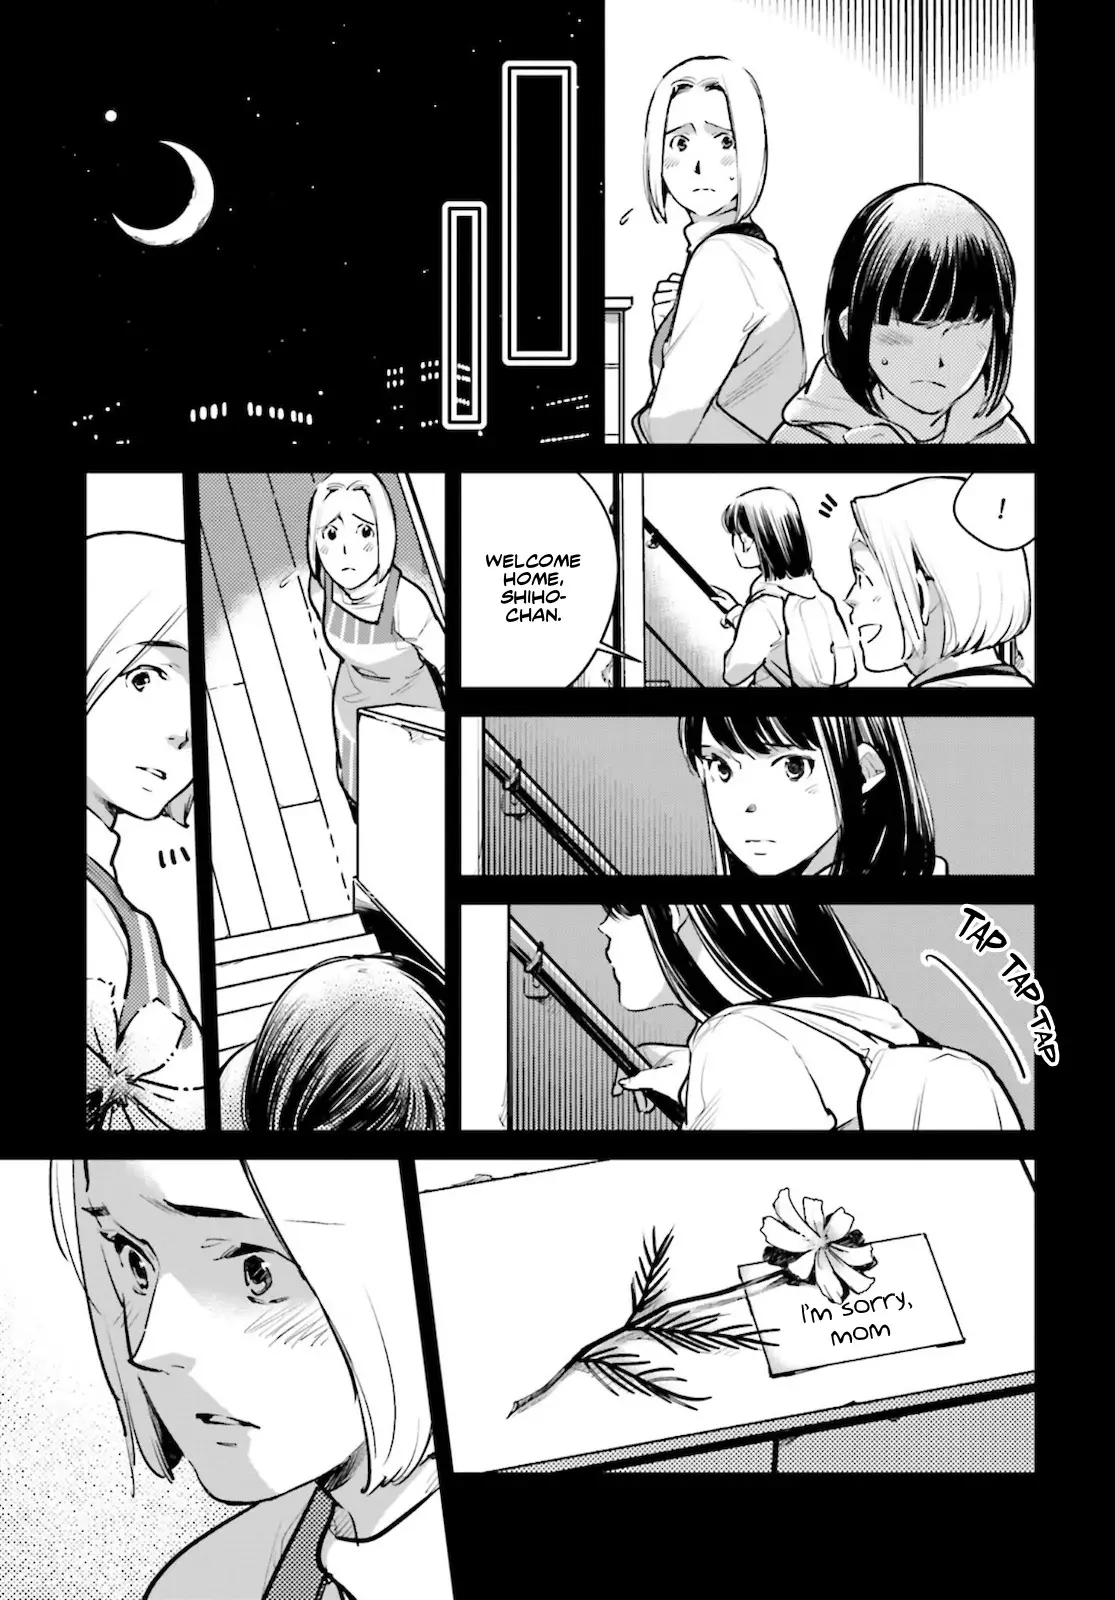 Okashiratsuki - 22 page 12-9801716c